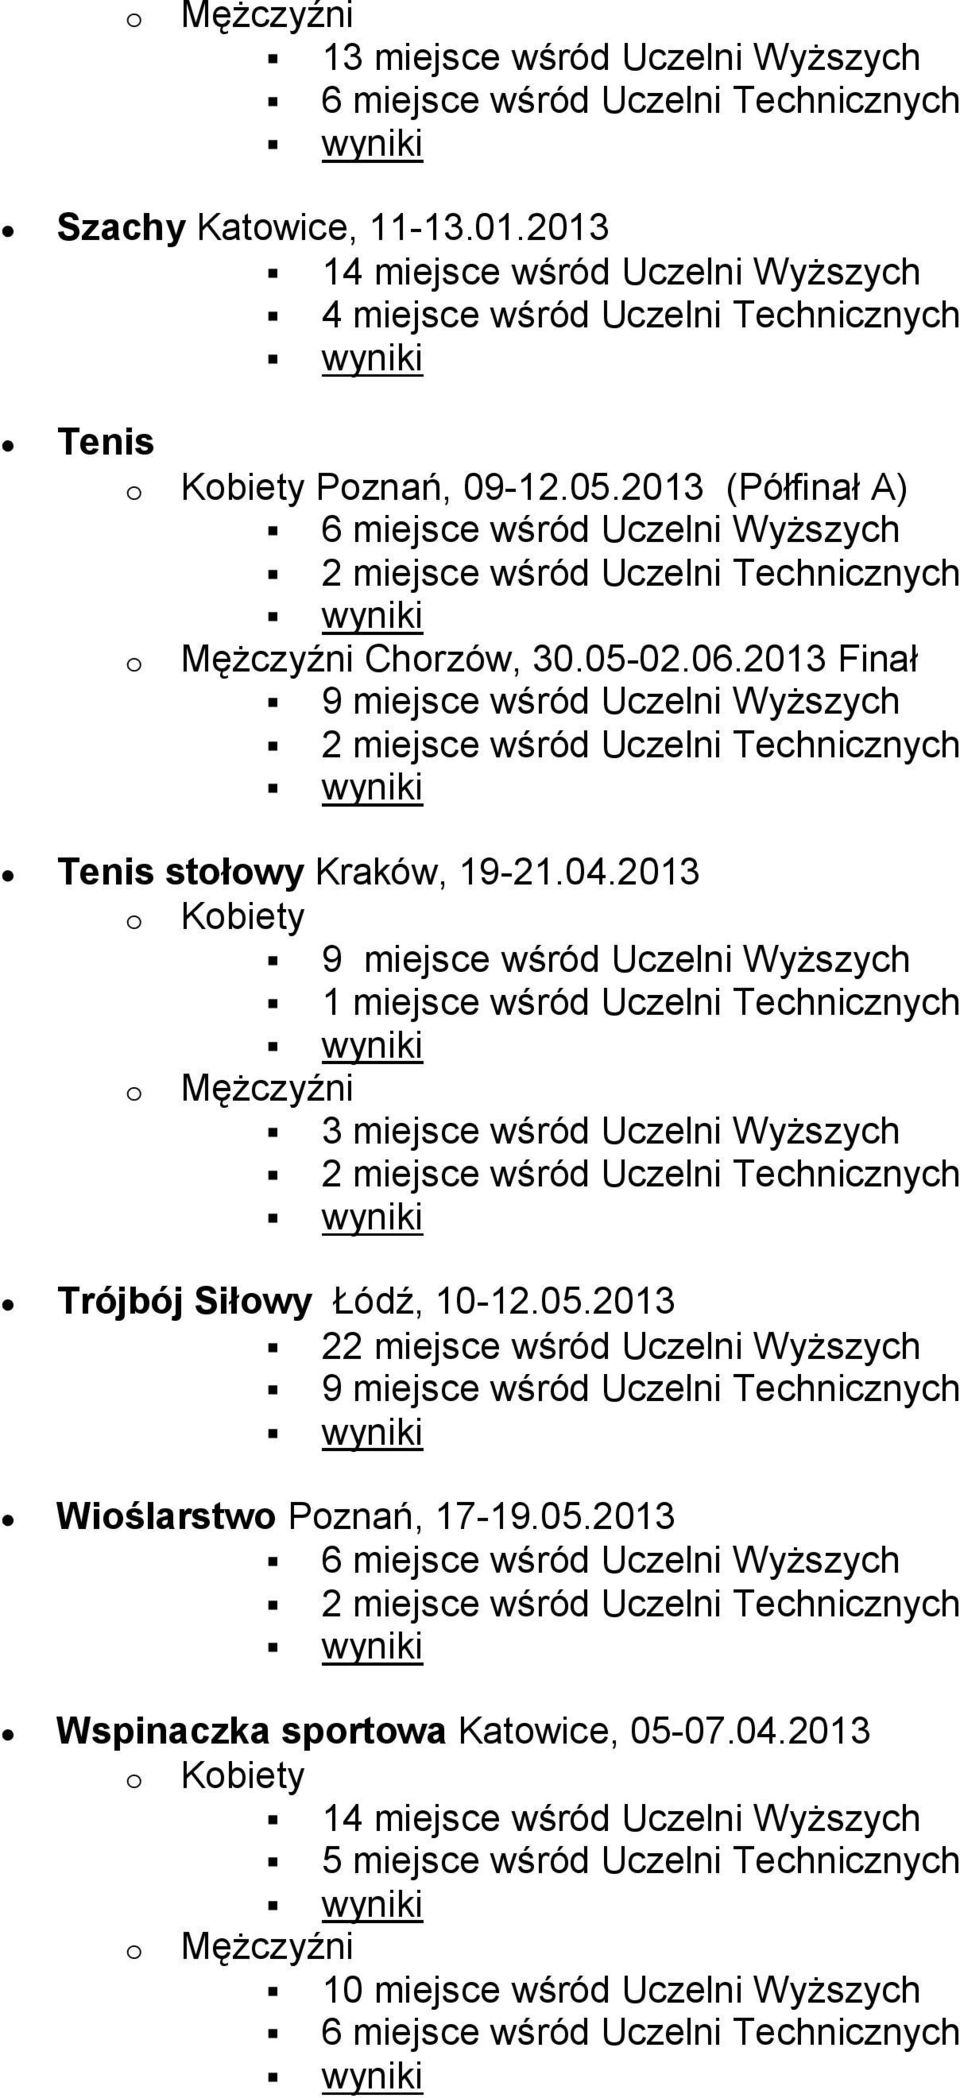 2013 1 miejsce wśród Uczelni Technicznych Trójbój Siłowy Łódź, 10-12.05.